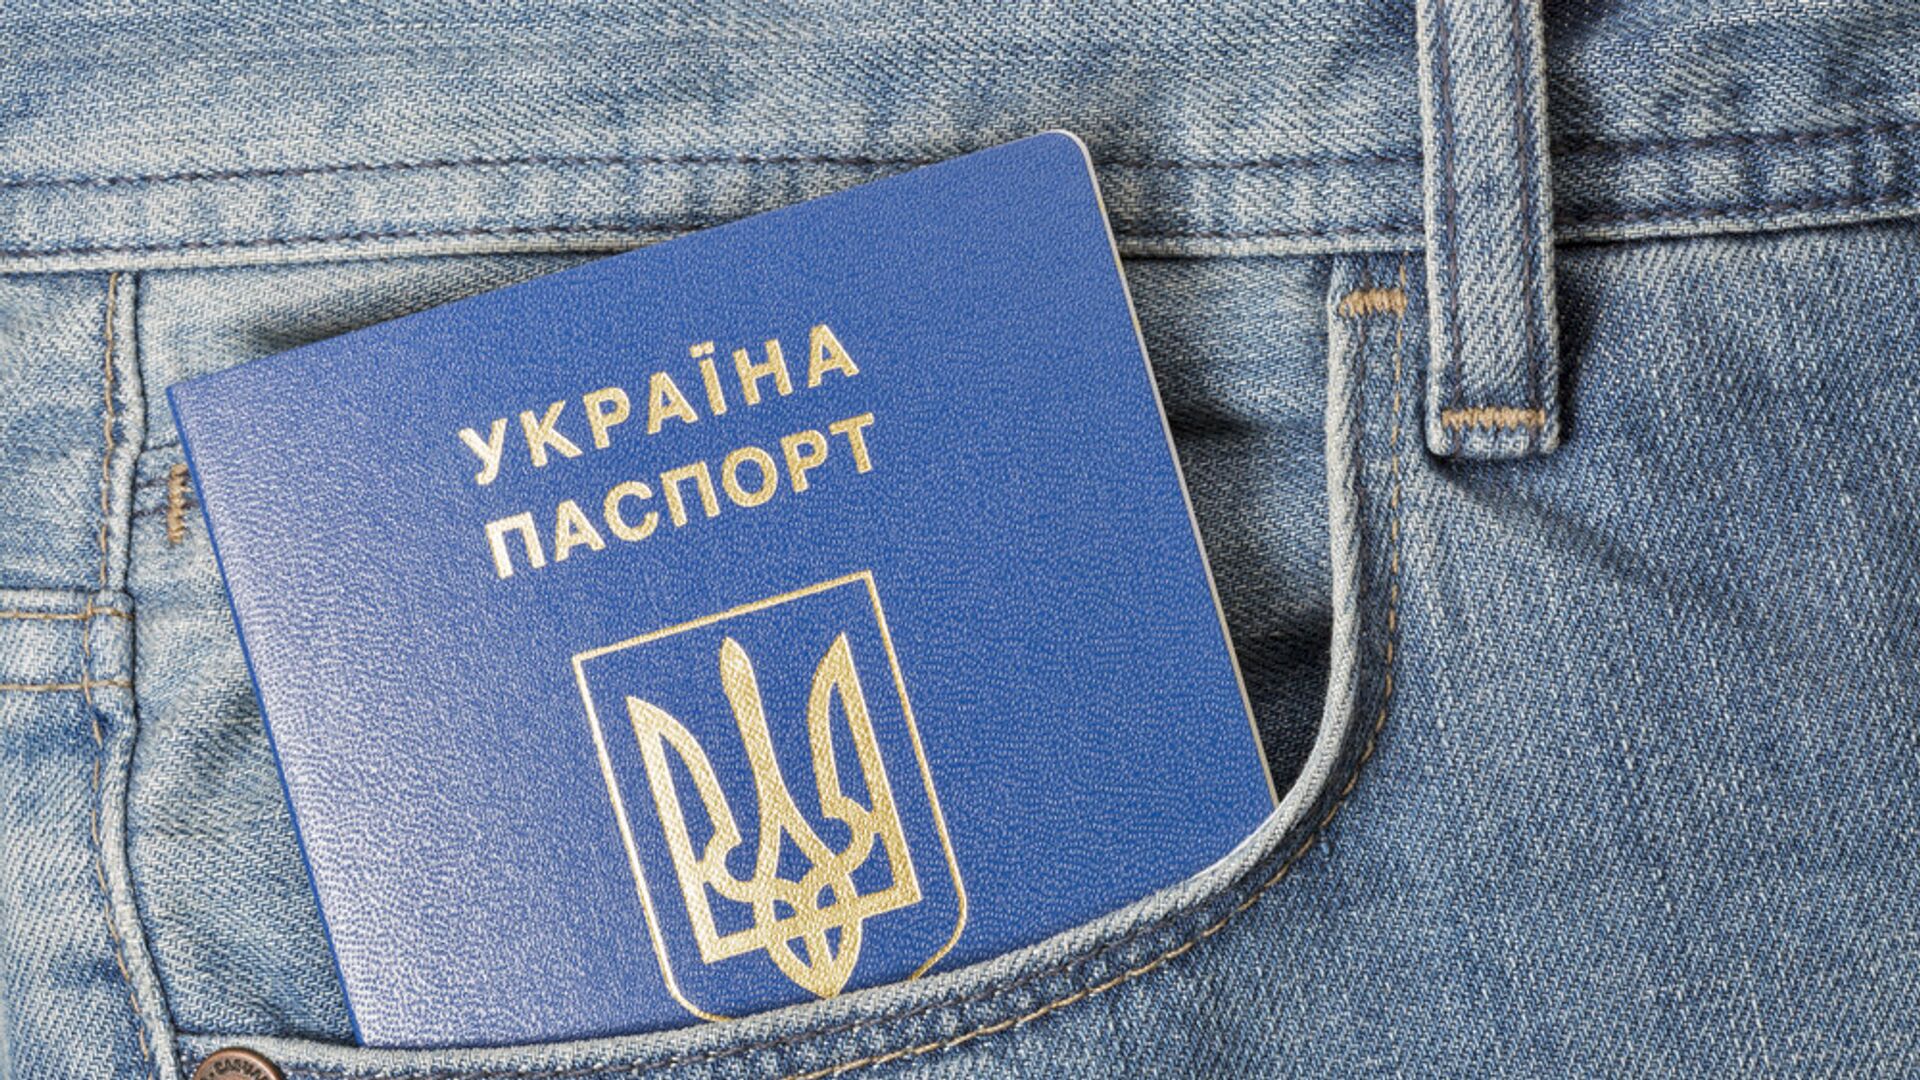 Украинский паспорт в кармане джинсов, архивное фото - Sputnik Lietuva, 1920, 01.03.2021